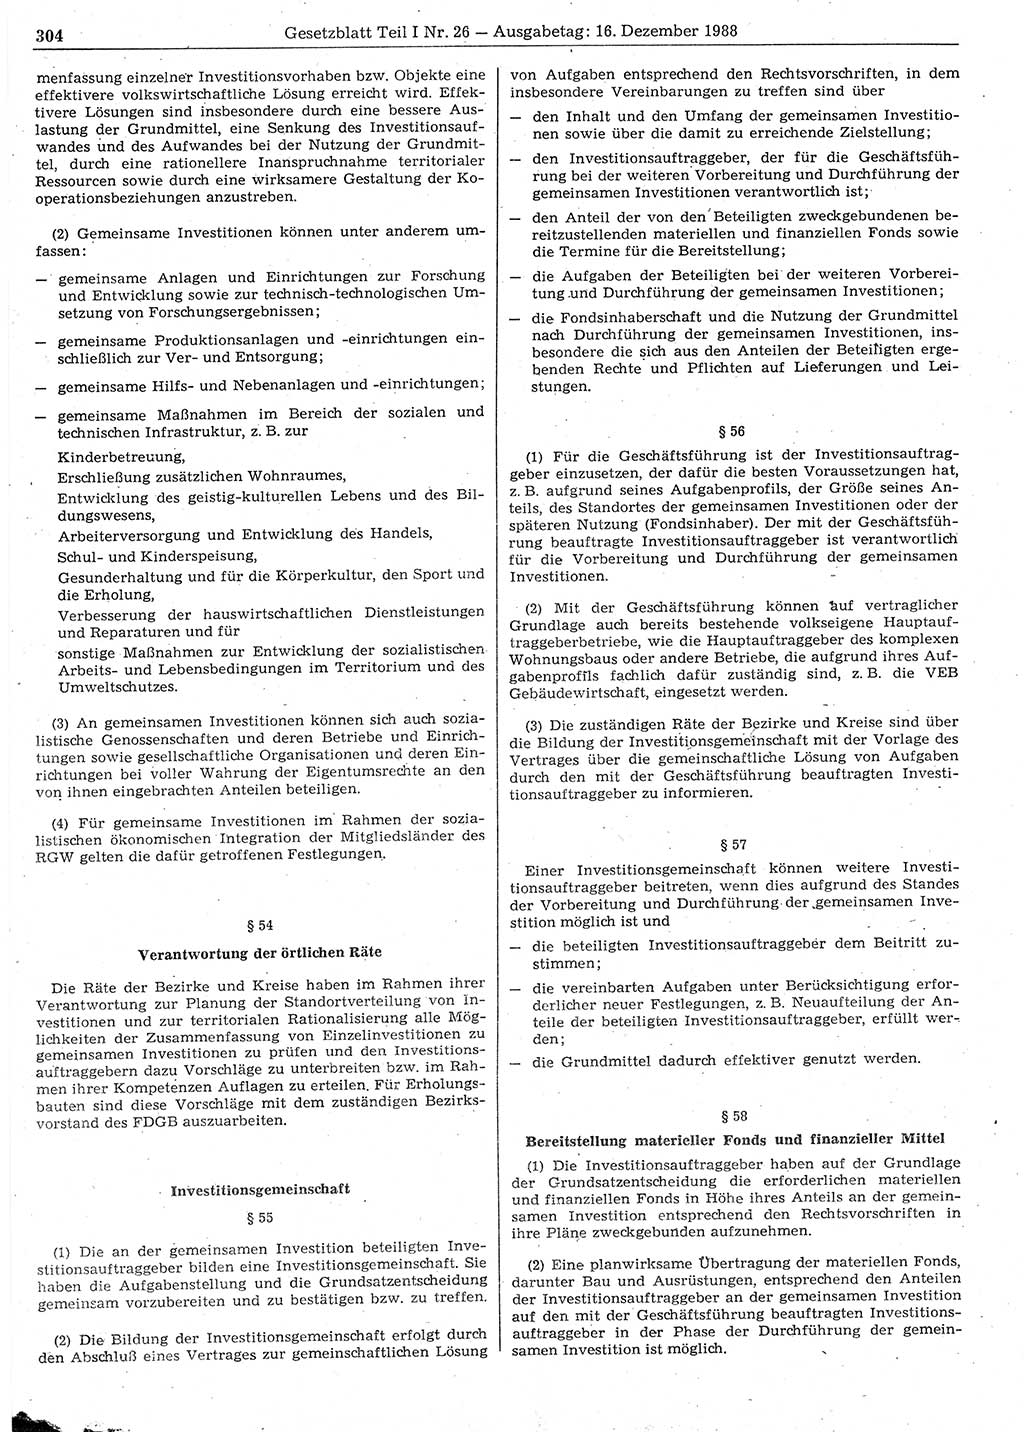 Gesetzblatt (GBl.) der Deutschen Demokratischen Republik (DDR) Teil Ⅰ 1988, Seite 304 (GBl. DDR Ⅰ 1988, S. 304)